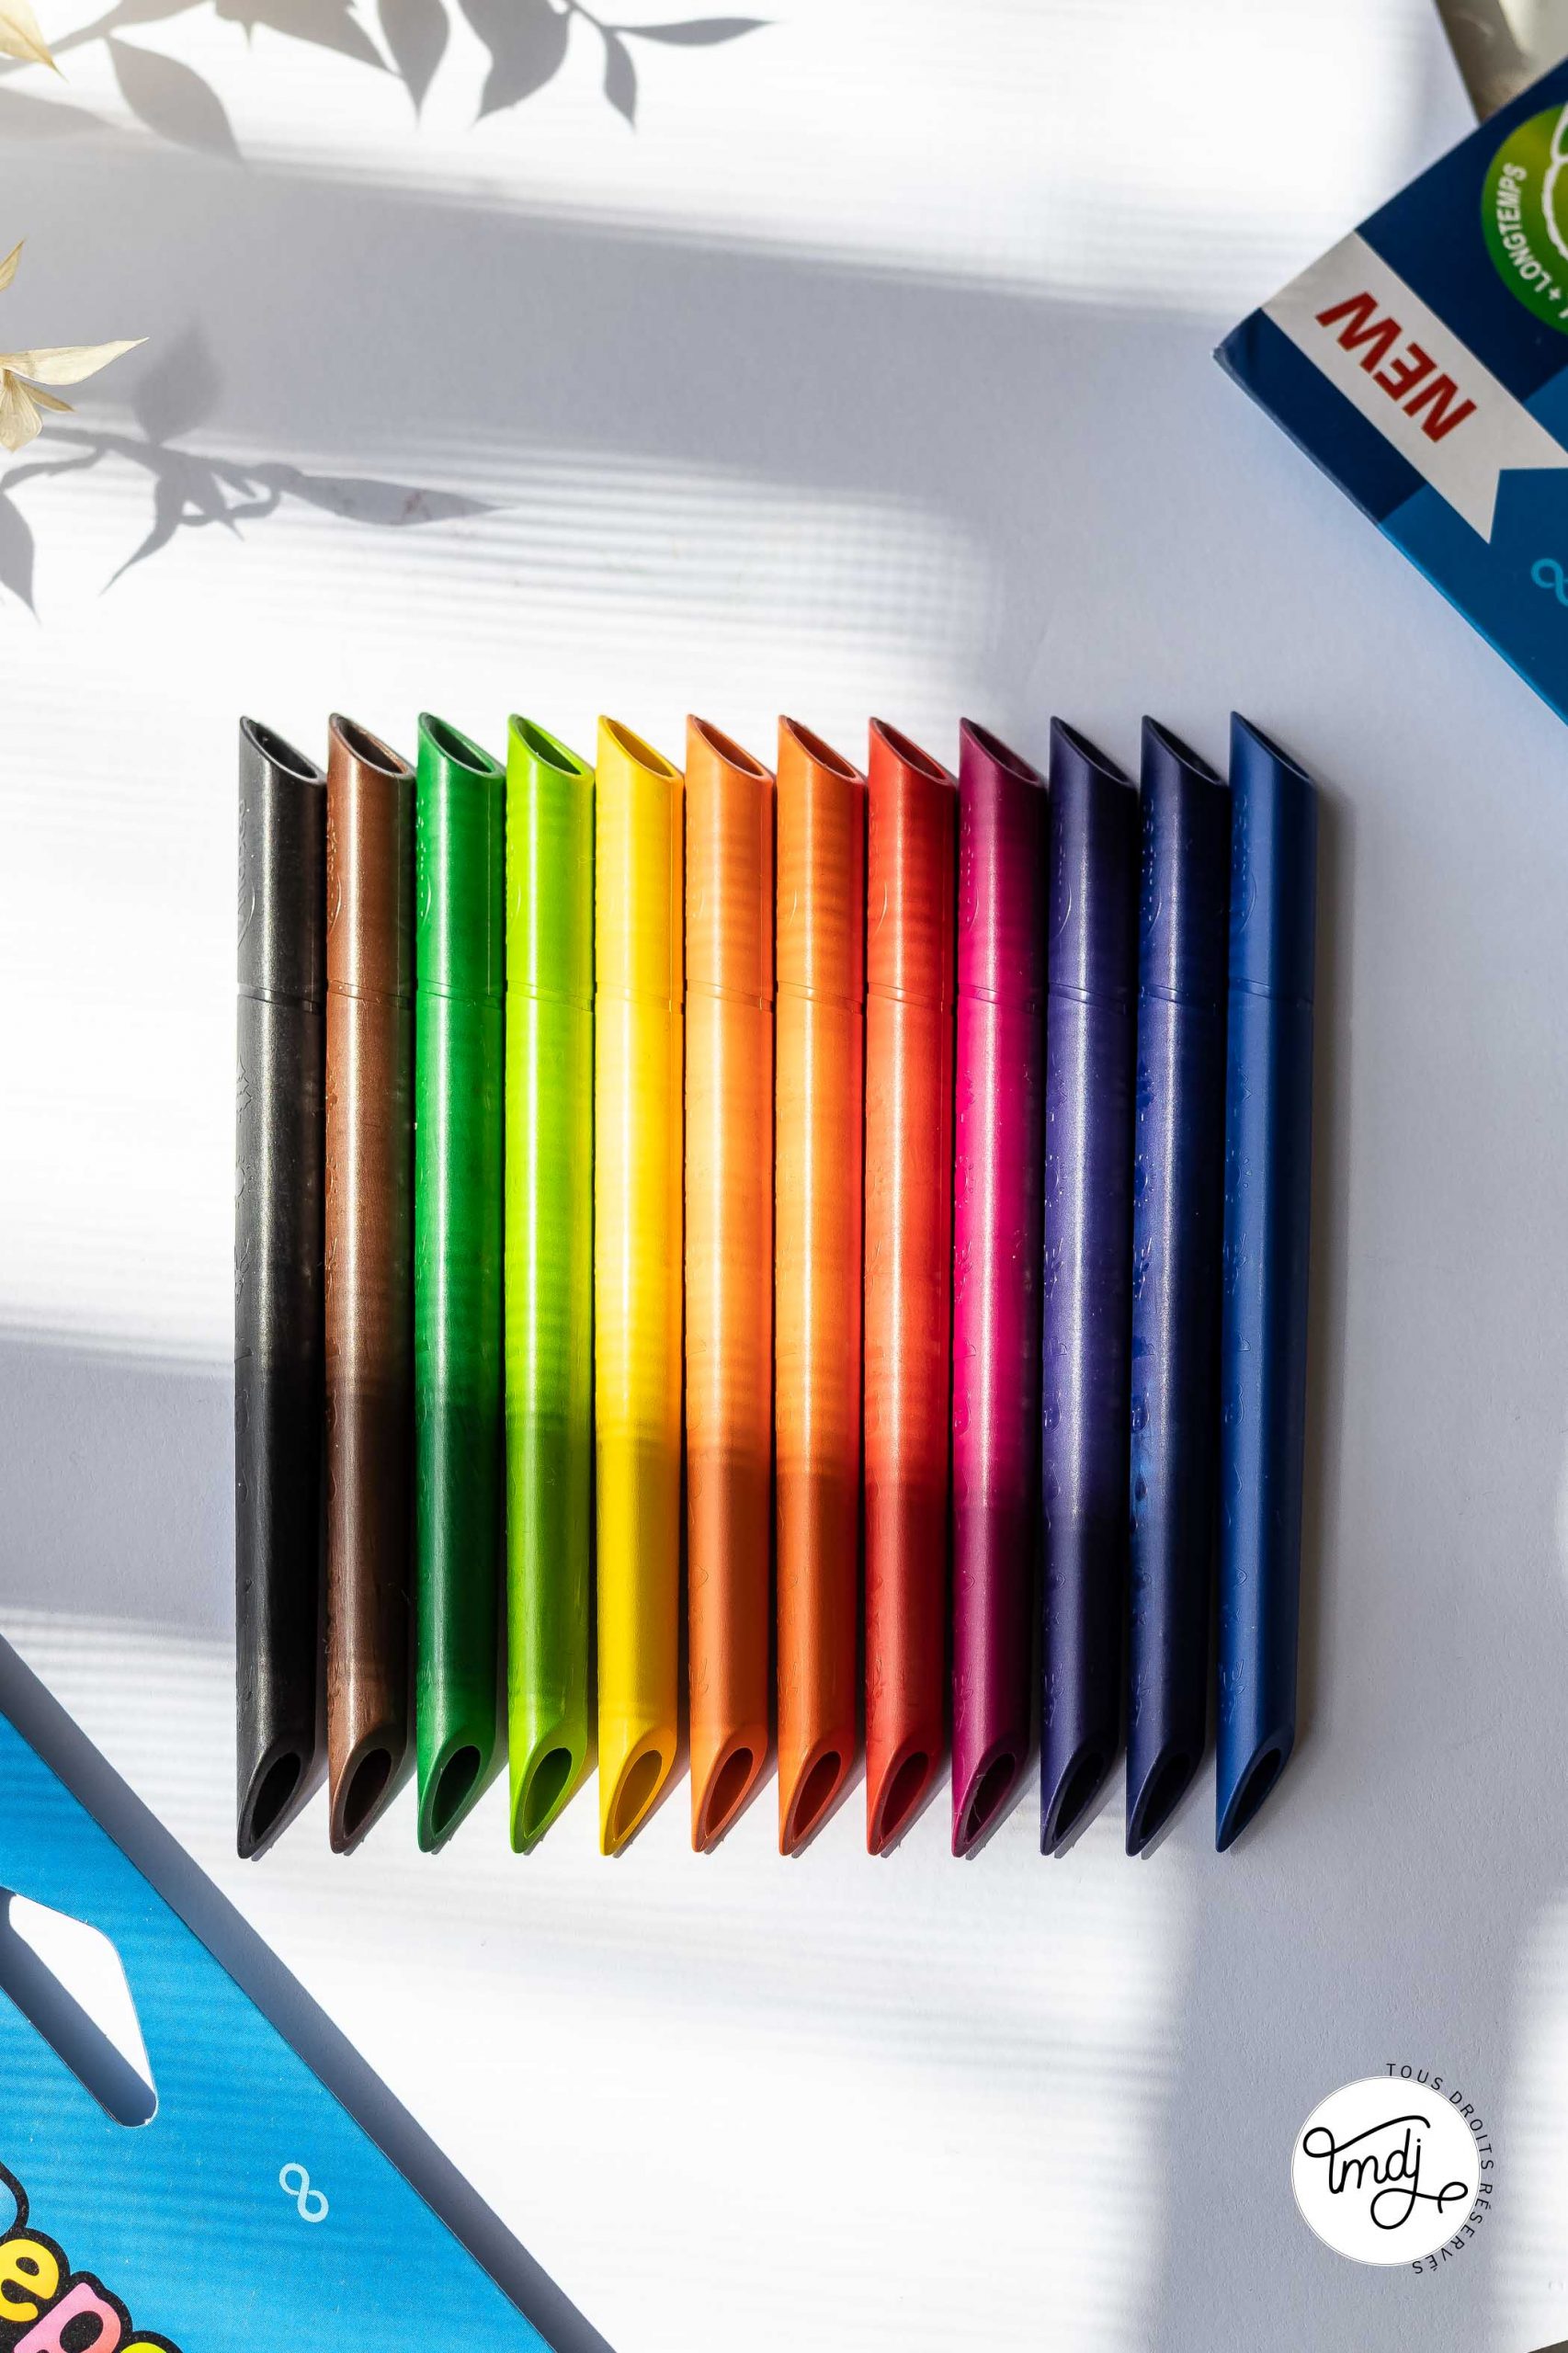 Crayon de couleur Maped Color'Peps Infinity boîte 24 couleurs sur